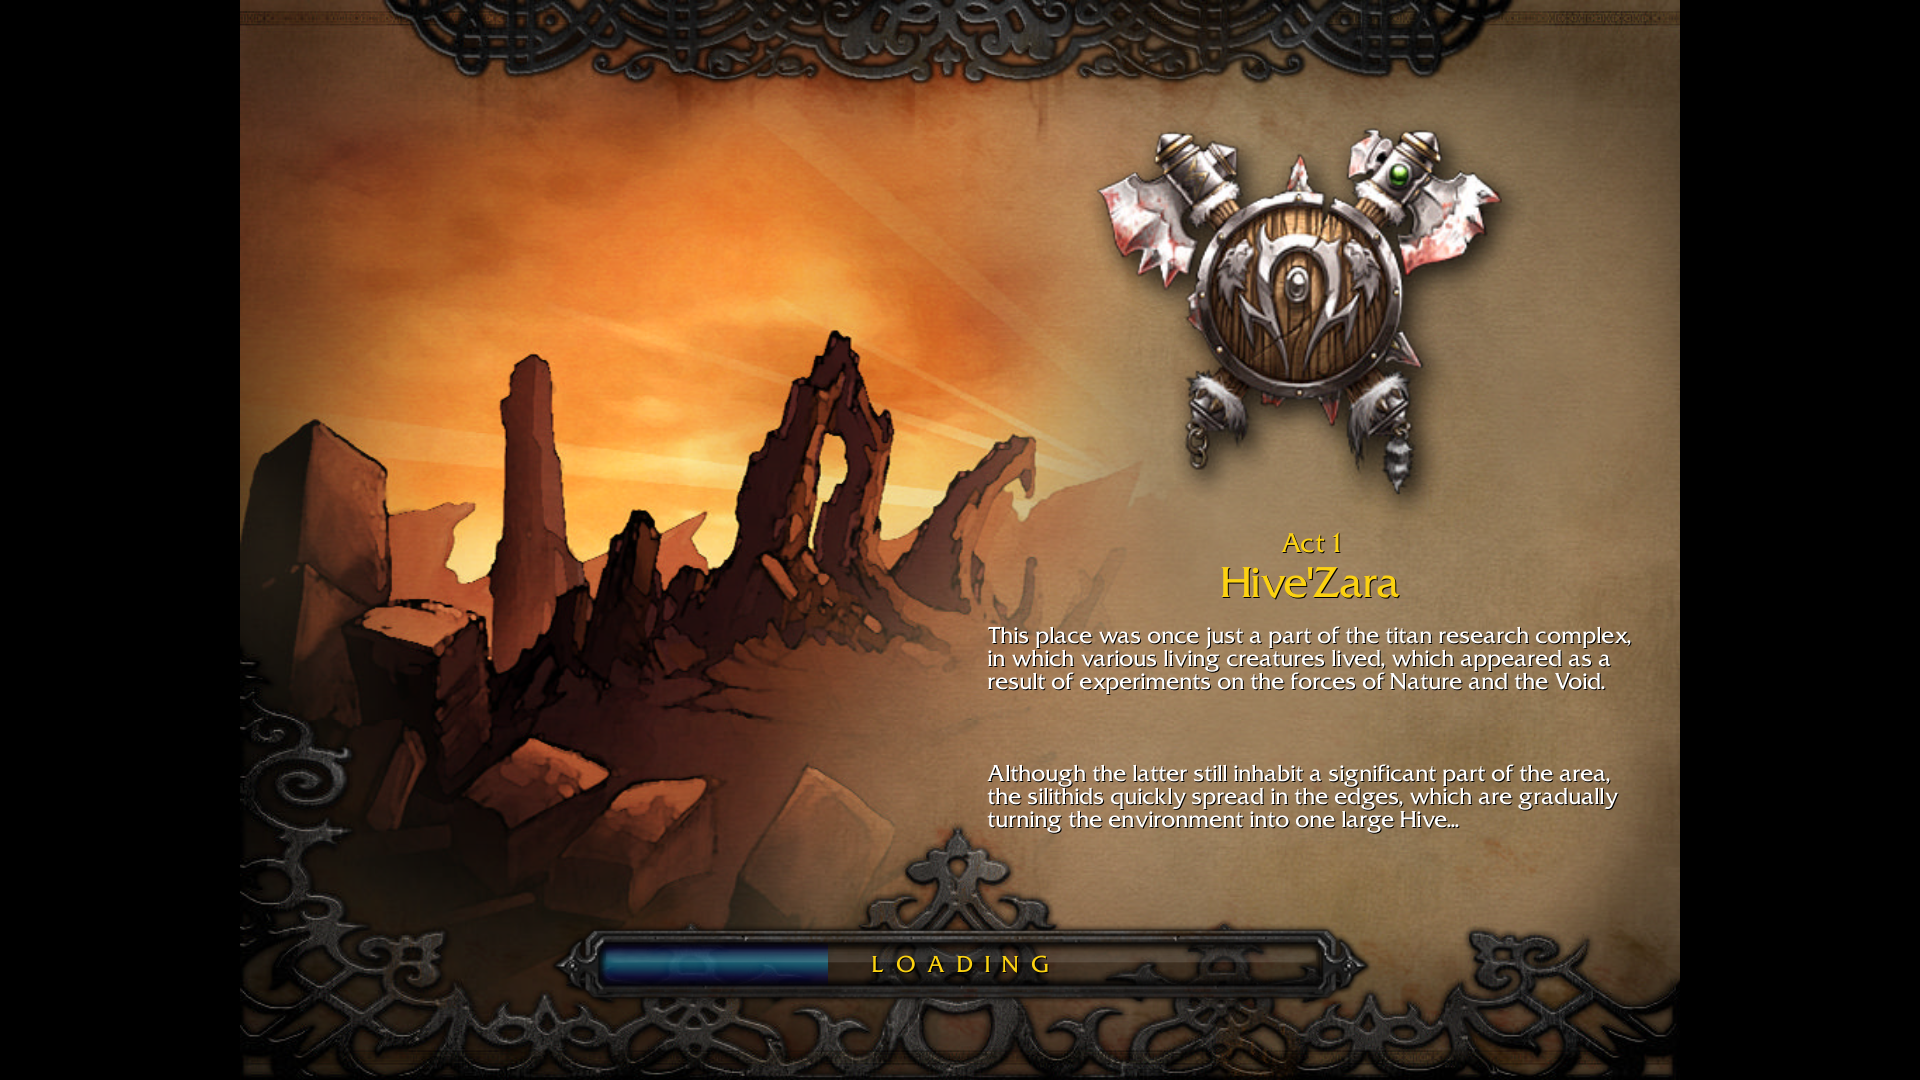 Deep vault 69 чит код. Загрузочный экран Калимдора. Warcraft 3 the Frozen Throne загрузочный экран. Warcraft 3 Frozen Throne Орда акт 1. Warcraft 3 loading Screen.